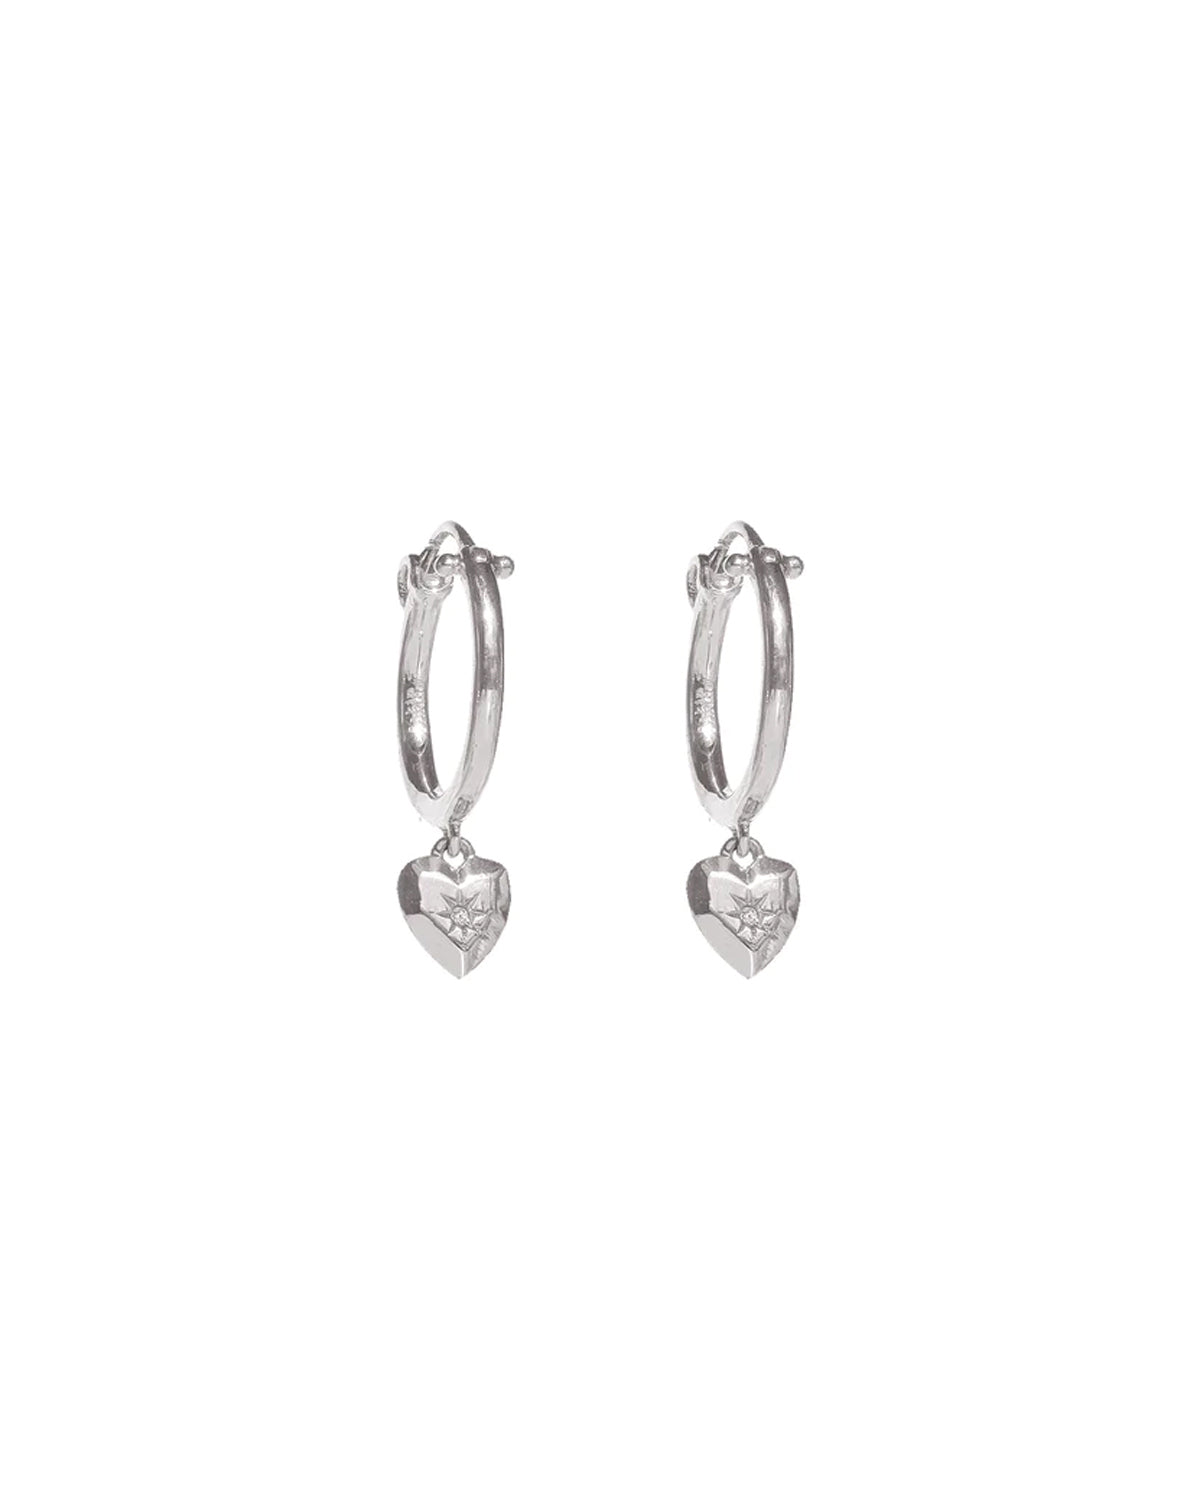 Aiko Heart Hoops - Sterling Silver | S-kin Studio Jewelry | Minimal Jewellery That Lasts.